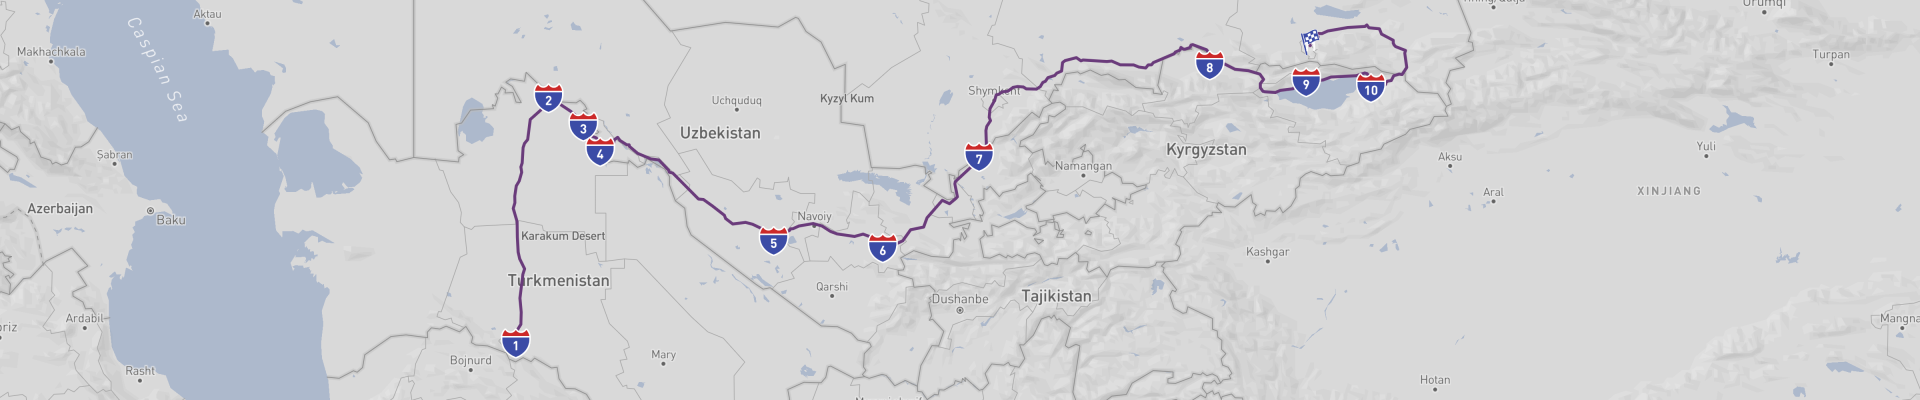 Viagem pela Ásia Central